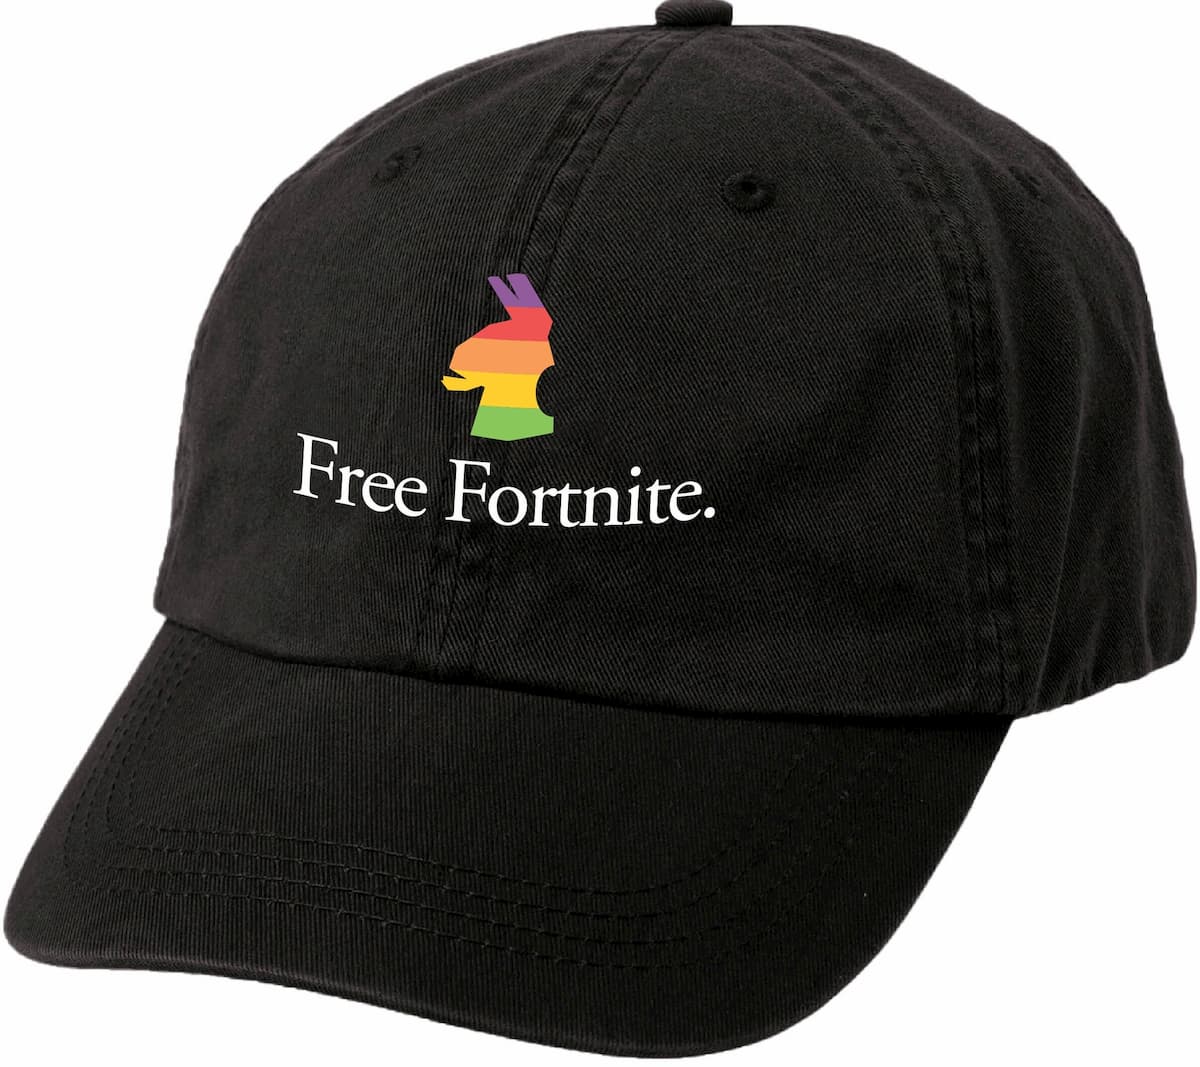 #FreeFortnite 帽子